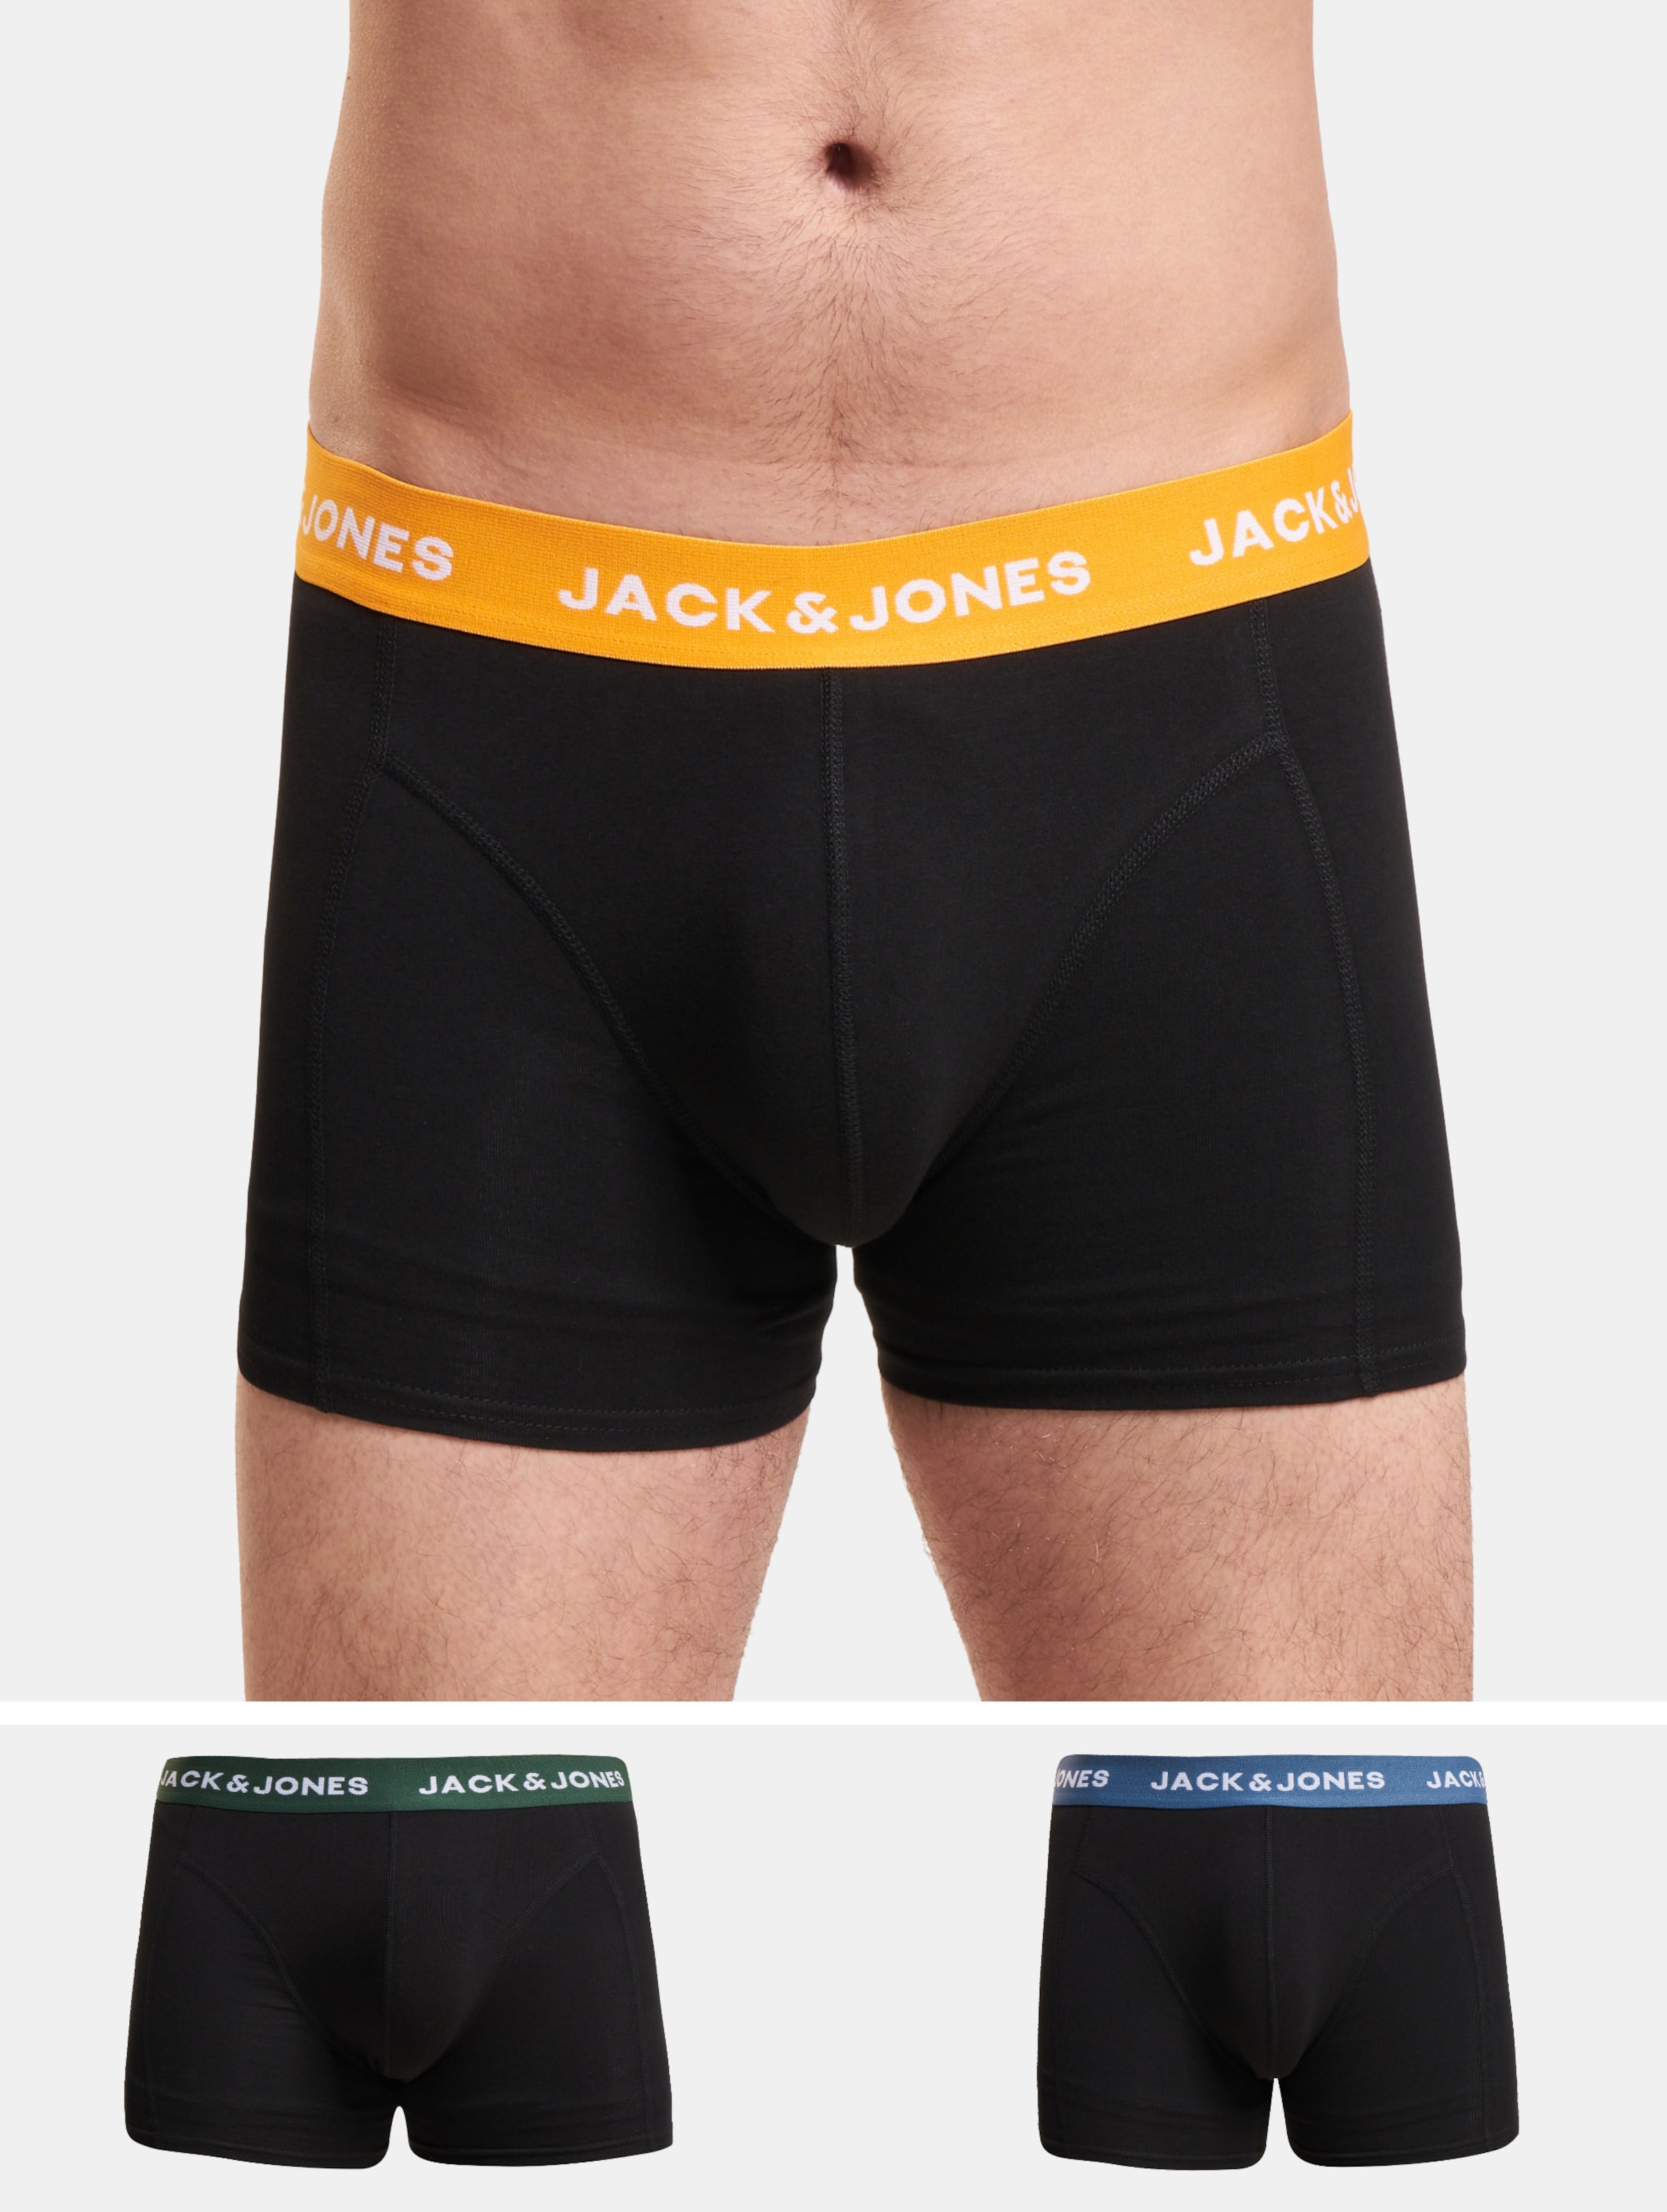 JACK & JONES Jacgab trunks (3-pack) - heren boxers normale lengte - donkergroen en zwart - Maat: XL